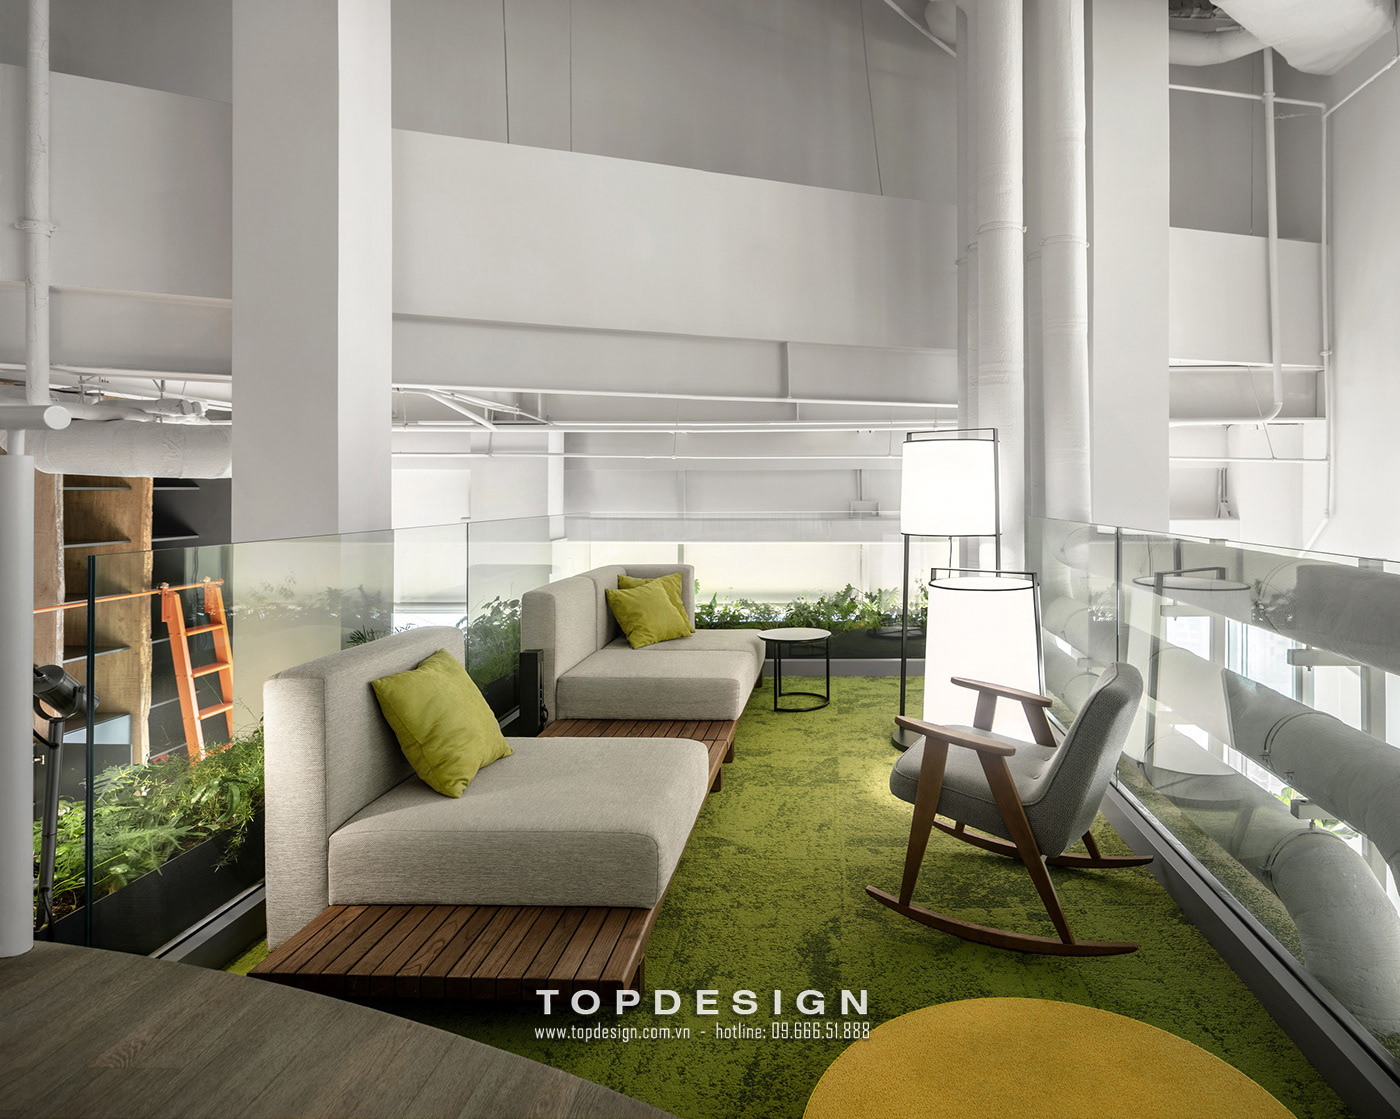 1.Thiết kế văn phòng phong cách eco đẹp hiện đại_TOPDESIGN